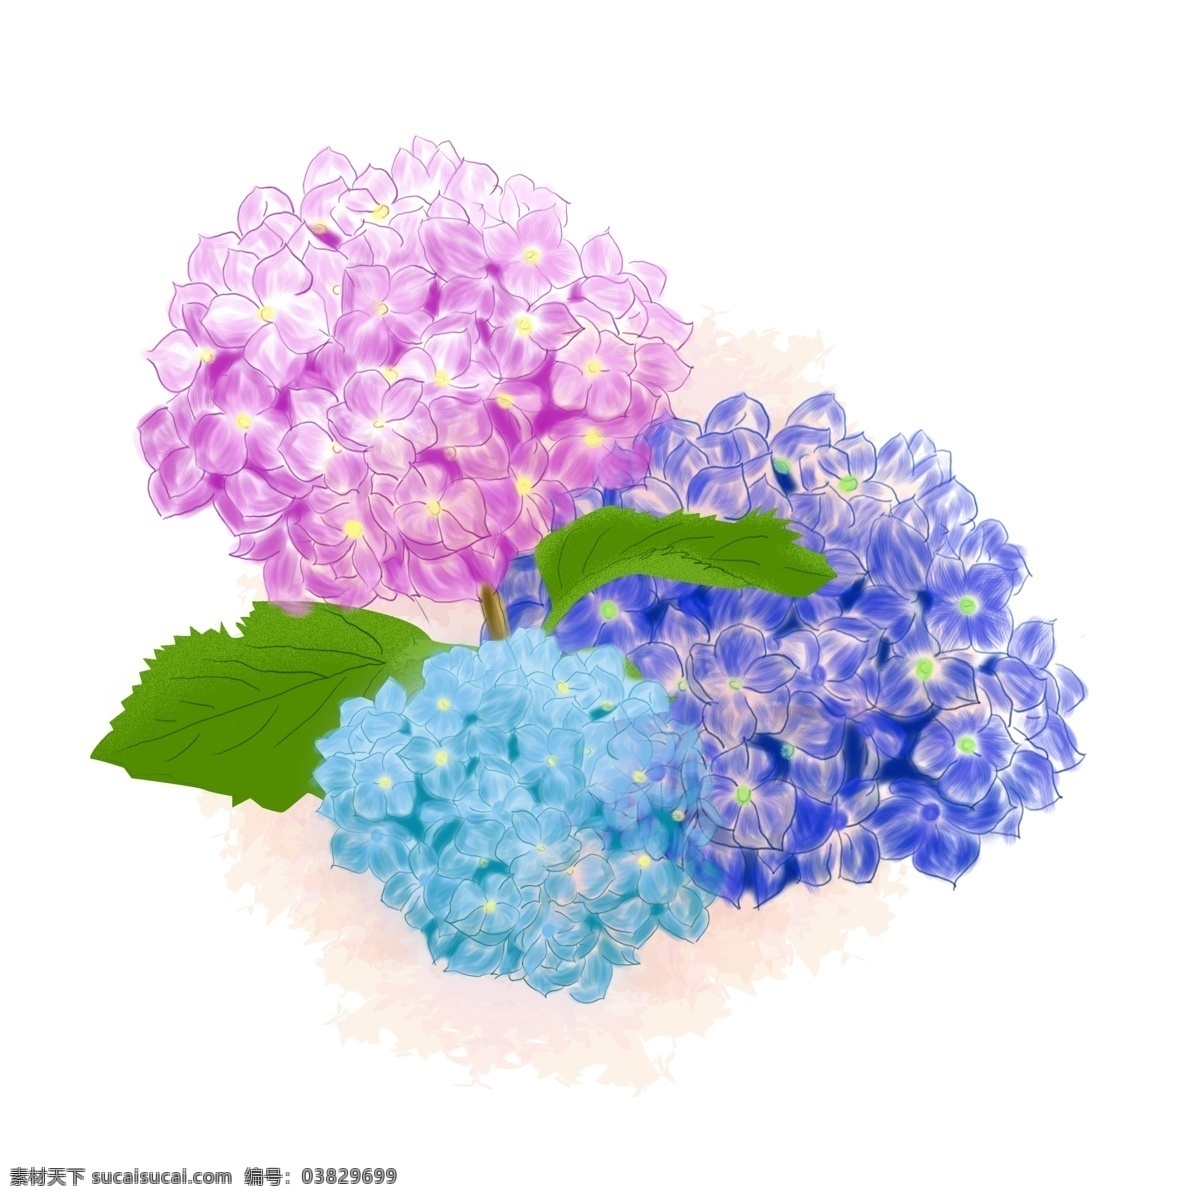 绣 球花 紫色 手绘 风 花朵 元素 绣球花 蓝色 叶子 手绘花朵 手绘风